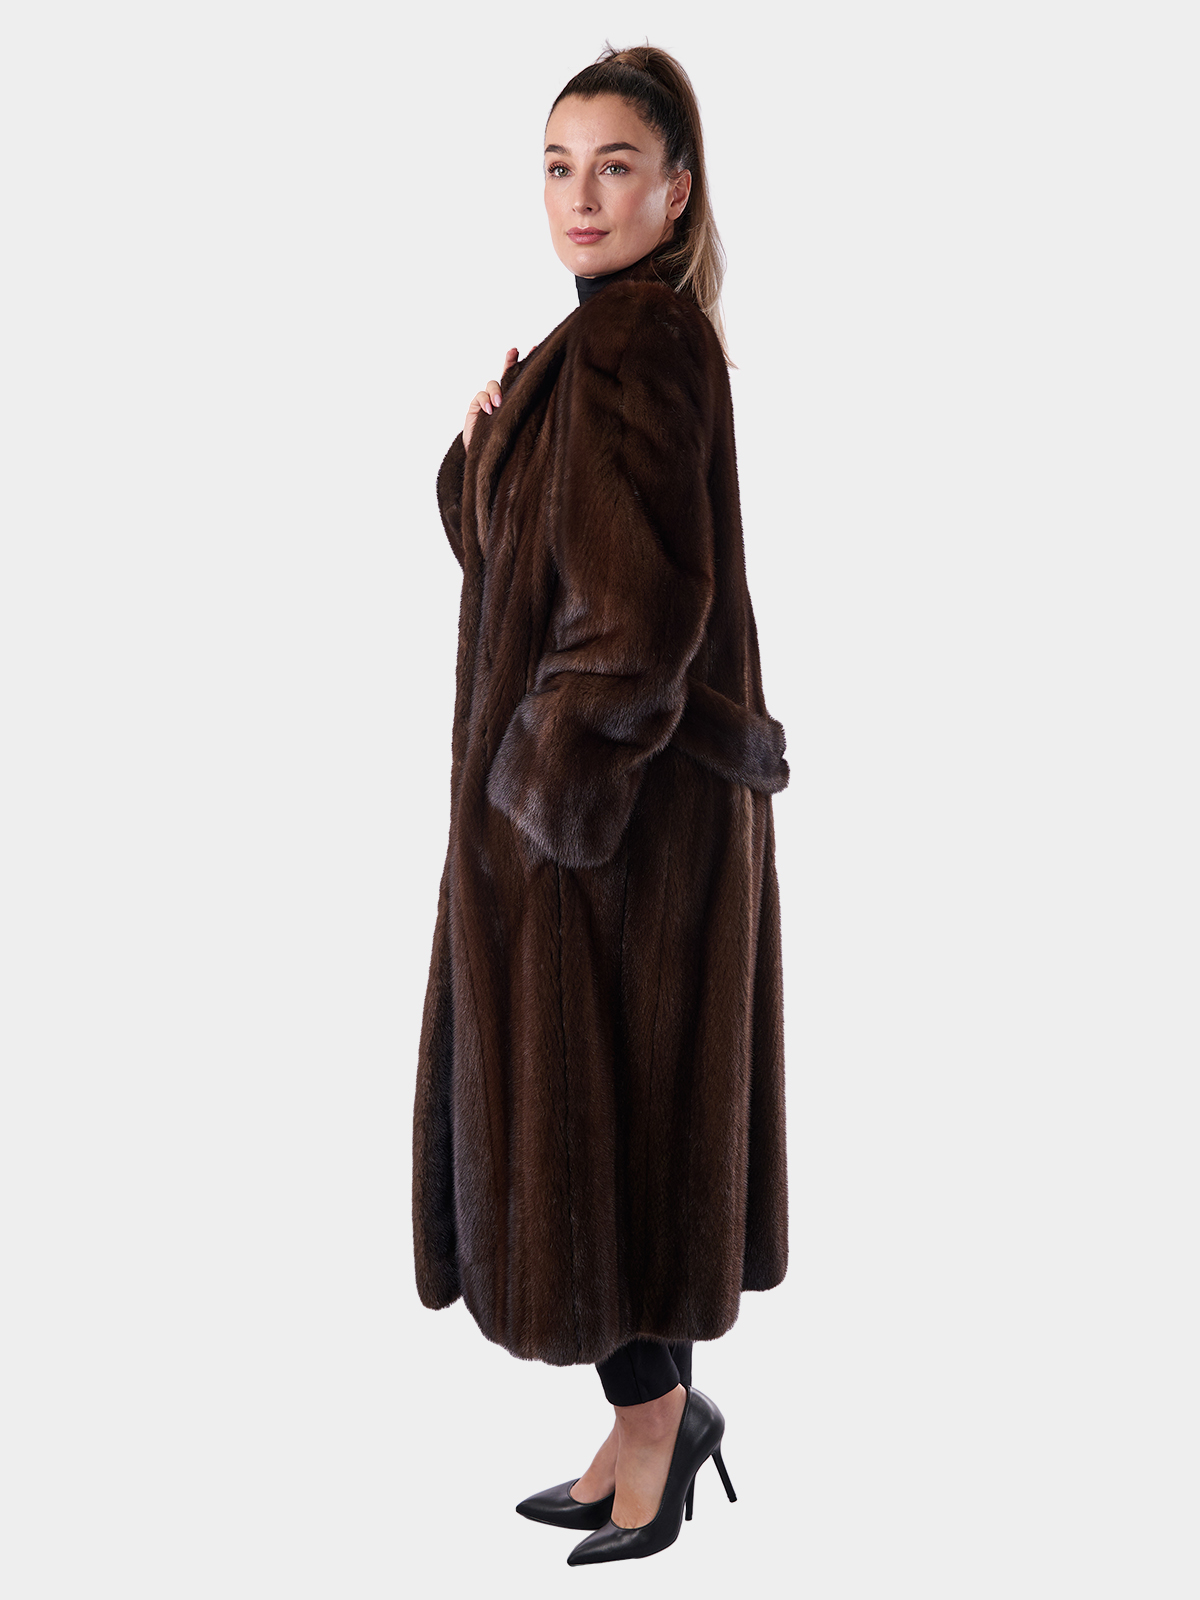 Mahogany Mink Fur Coat - Woman's Medium | Estate Furs